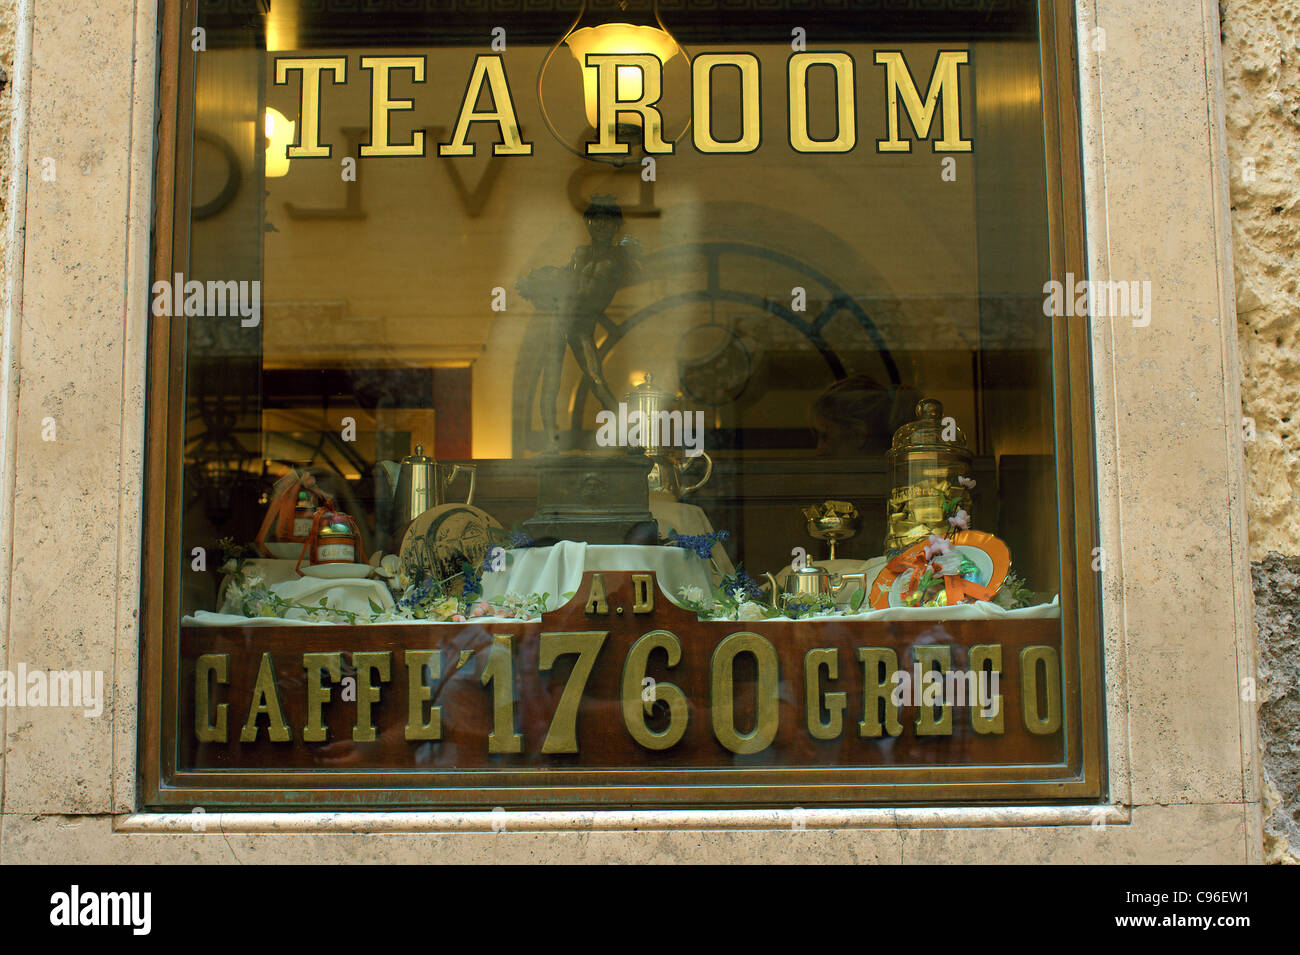 Tea Room Via dei Condotti Rome Cafe Greco Stock Photo